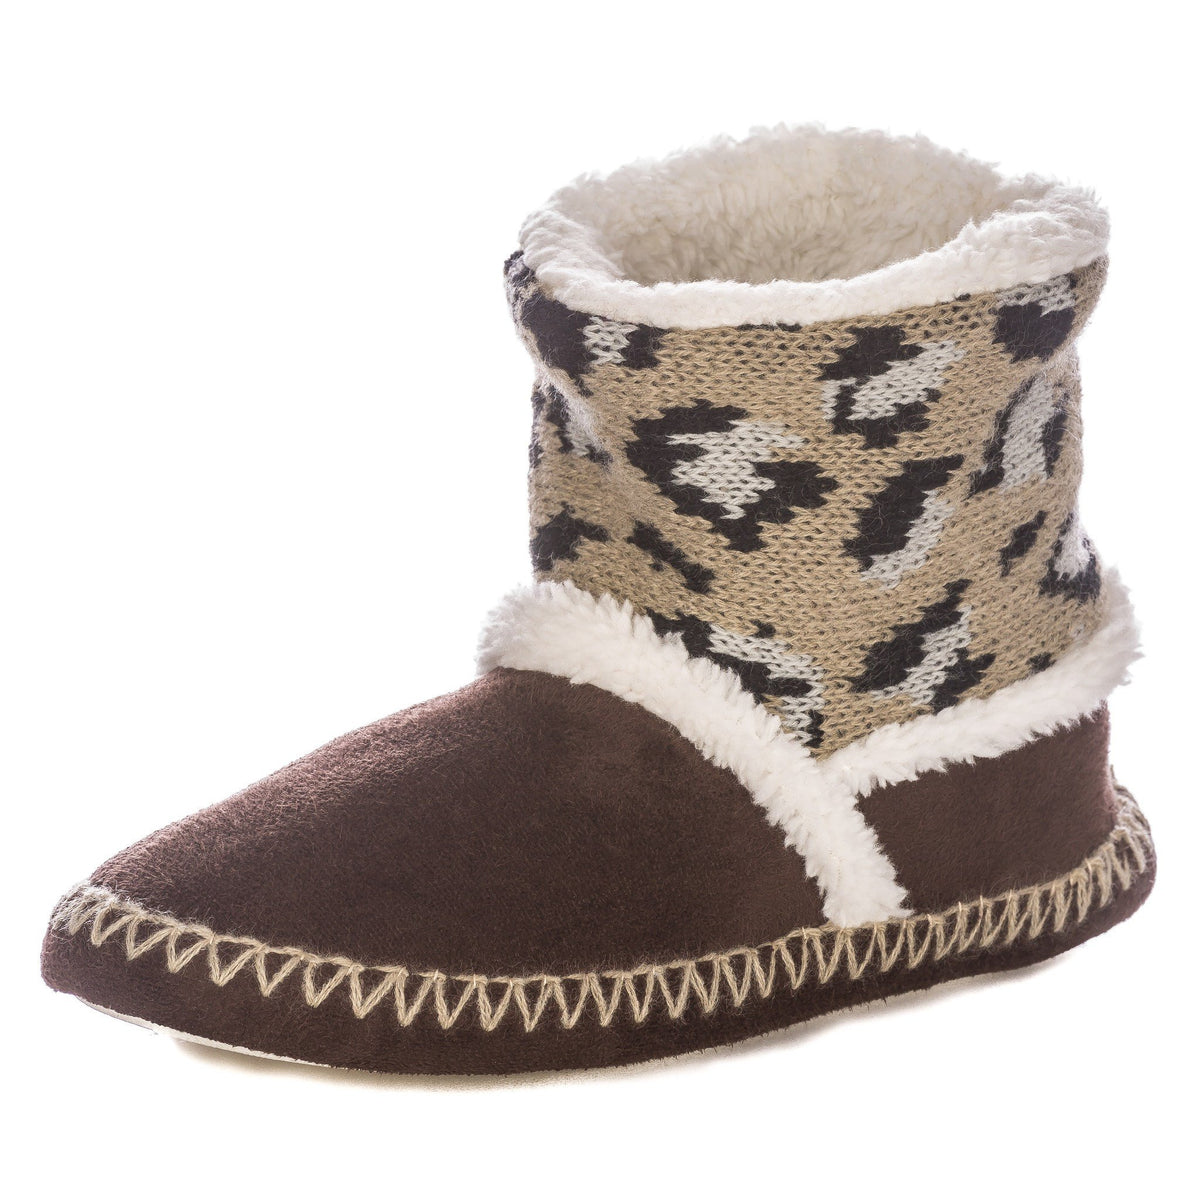 Women's Wildside Leopard Print Indoor Short Boot Slippers - Brown/Grey